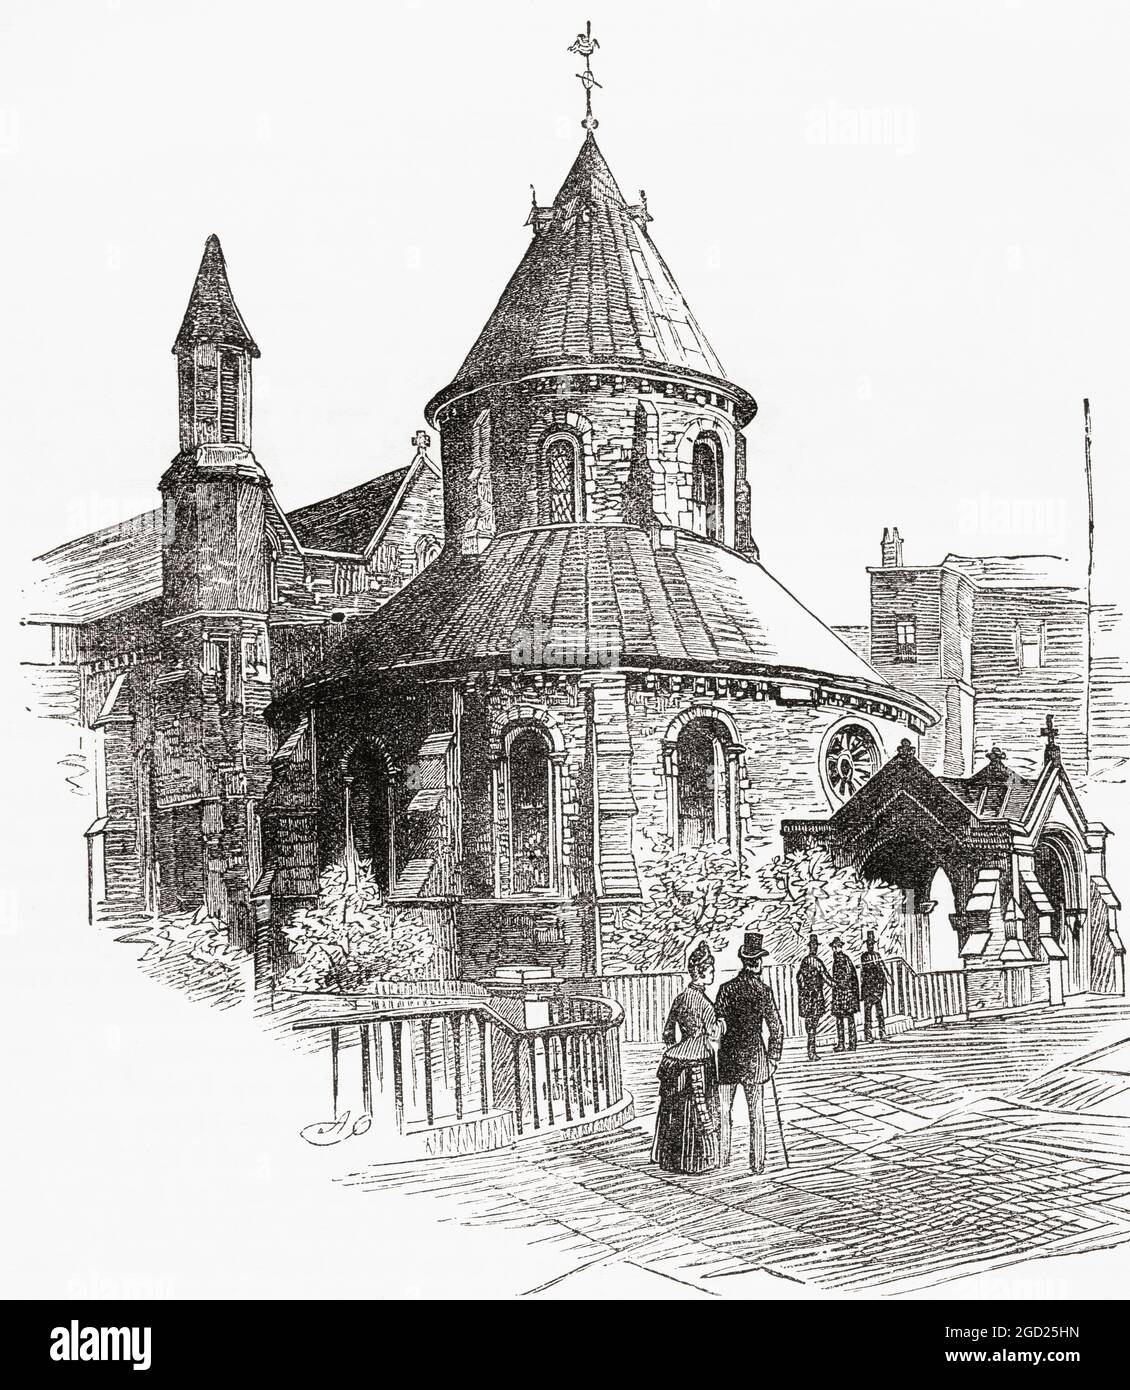 Die Temple Church, London, England, hier im 19. Jahrhundert gesehen. Die Kirche wurde von den Tempelrittern als englisches Hauptquartier errichtet. Aus dem malerischen England, seine Wahrzeichen und historischen Stätten, veröffentlicht 1891. Stockfoto